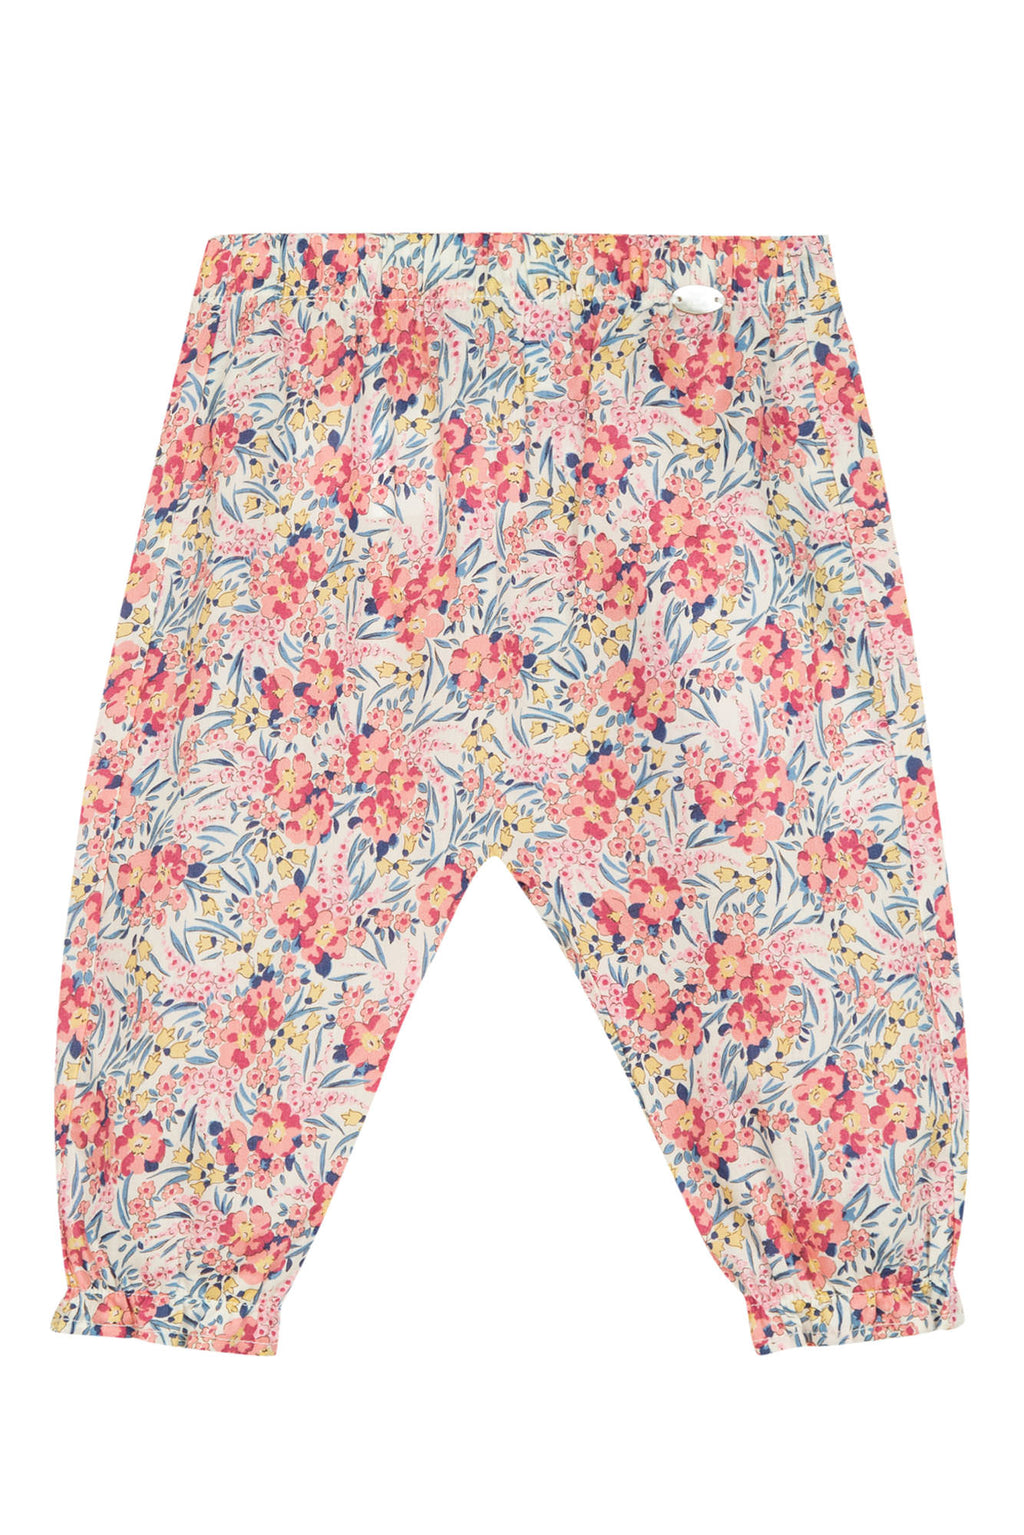 Pantalon - Coton tissu Liberty coquelicot